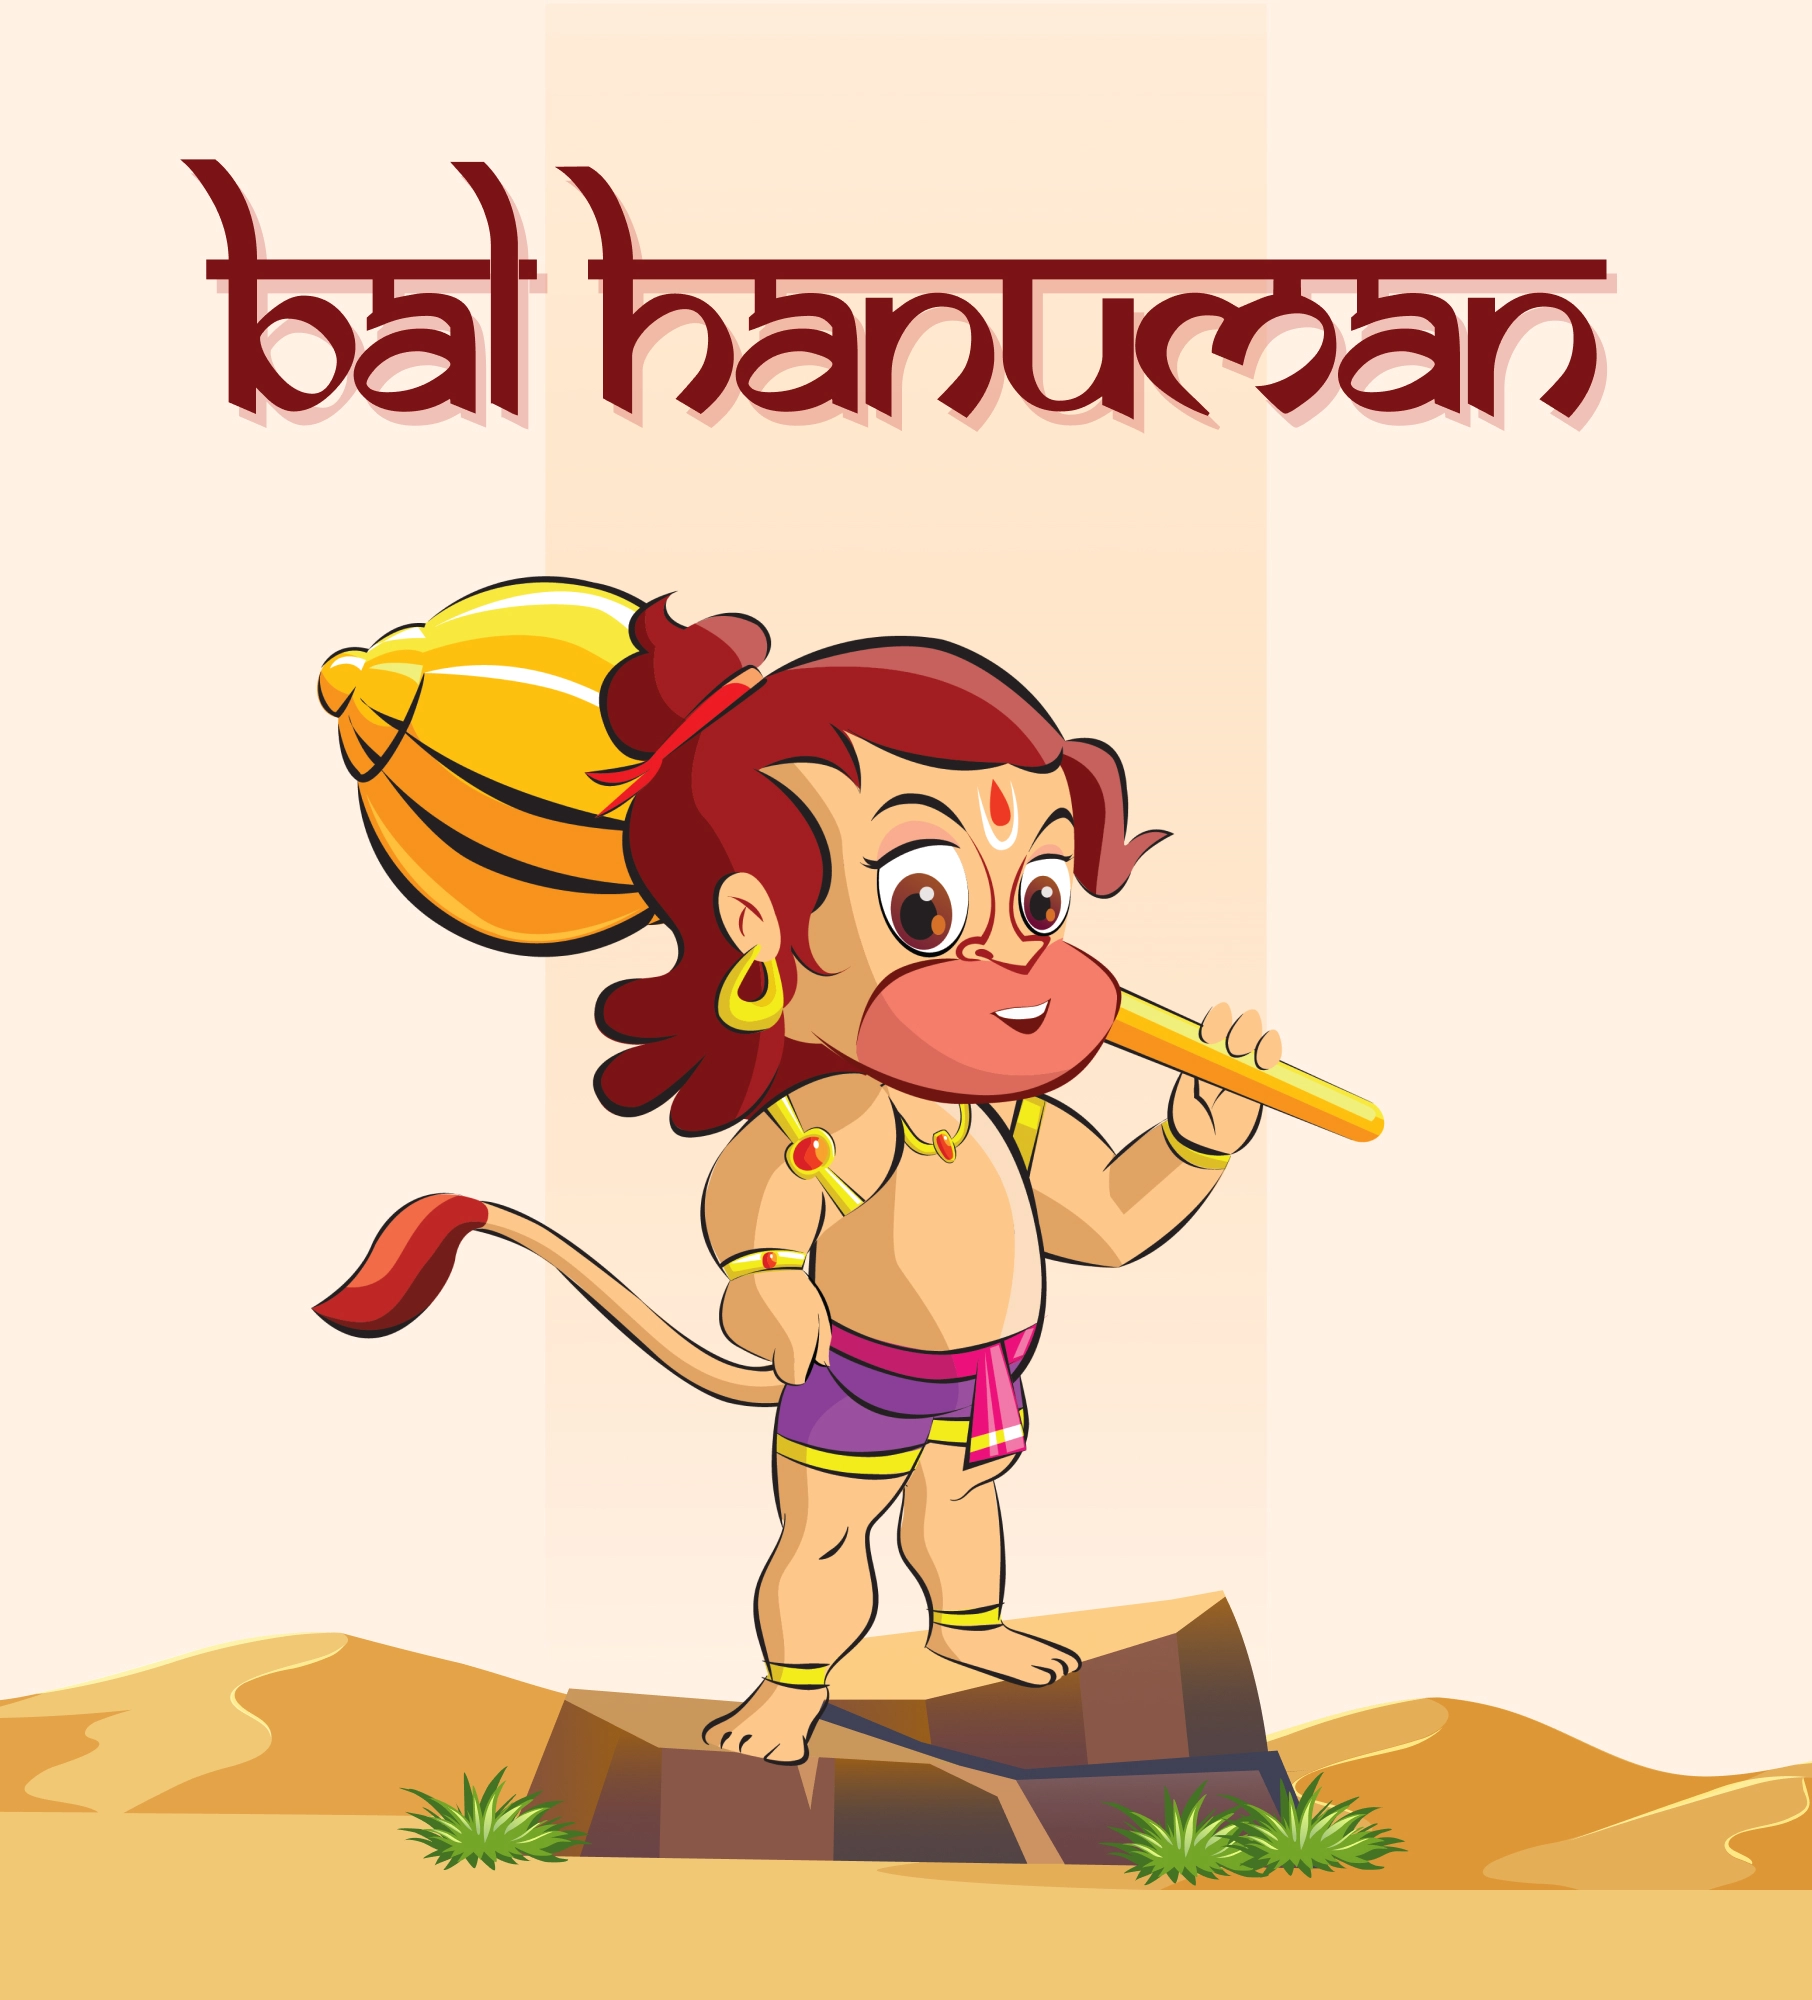 bal hanuman game development